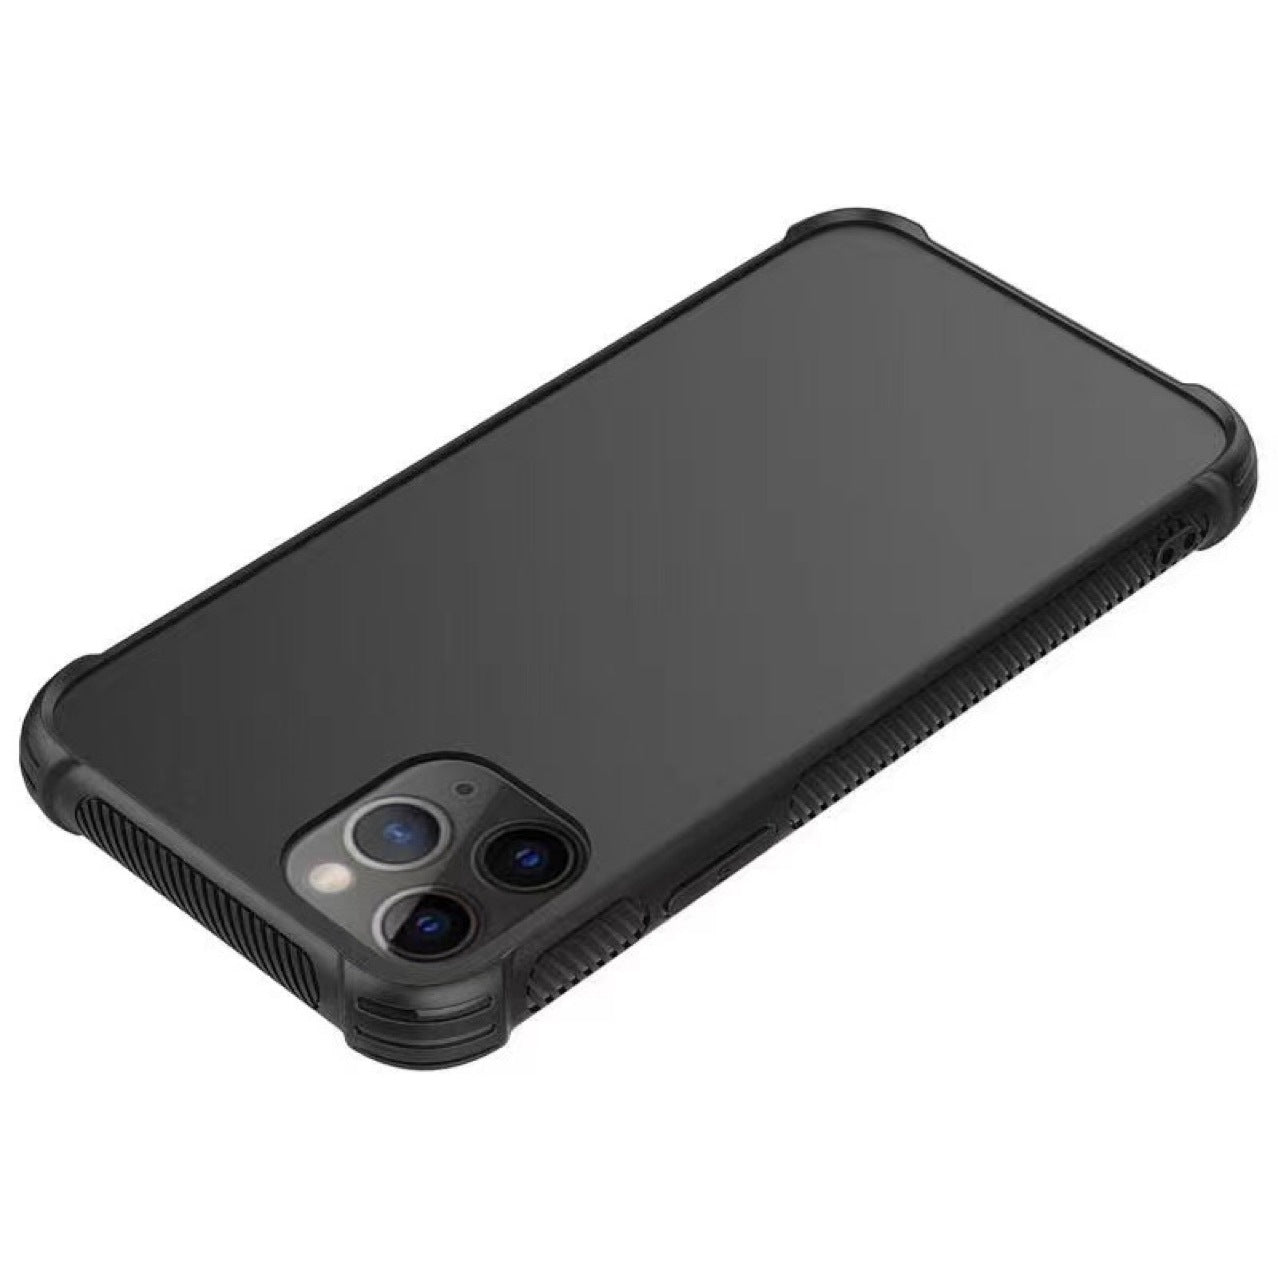 iPhone Case mit Kantenschutz in Schwarz